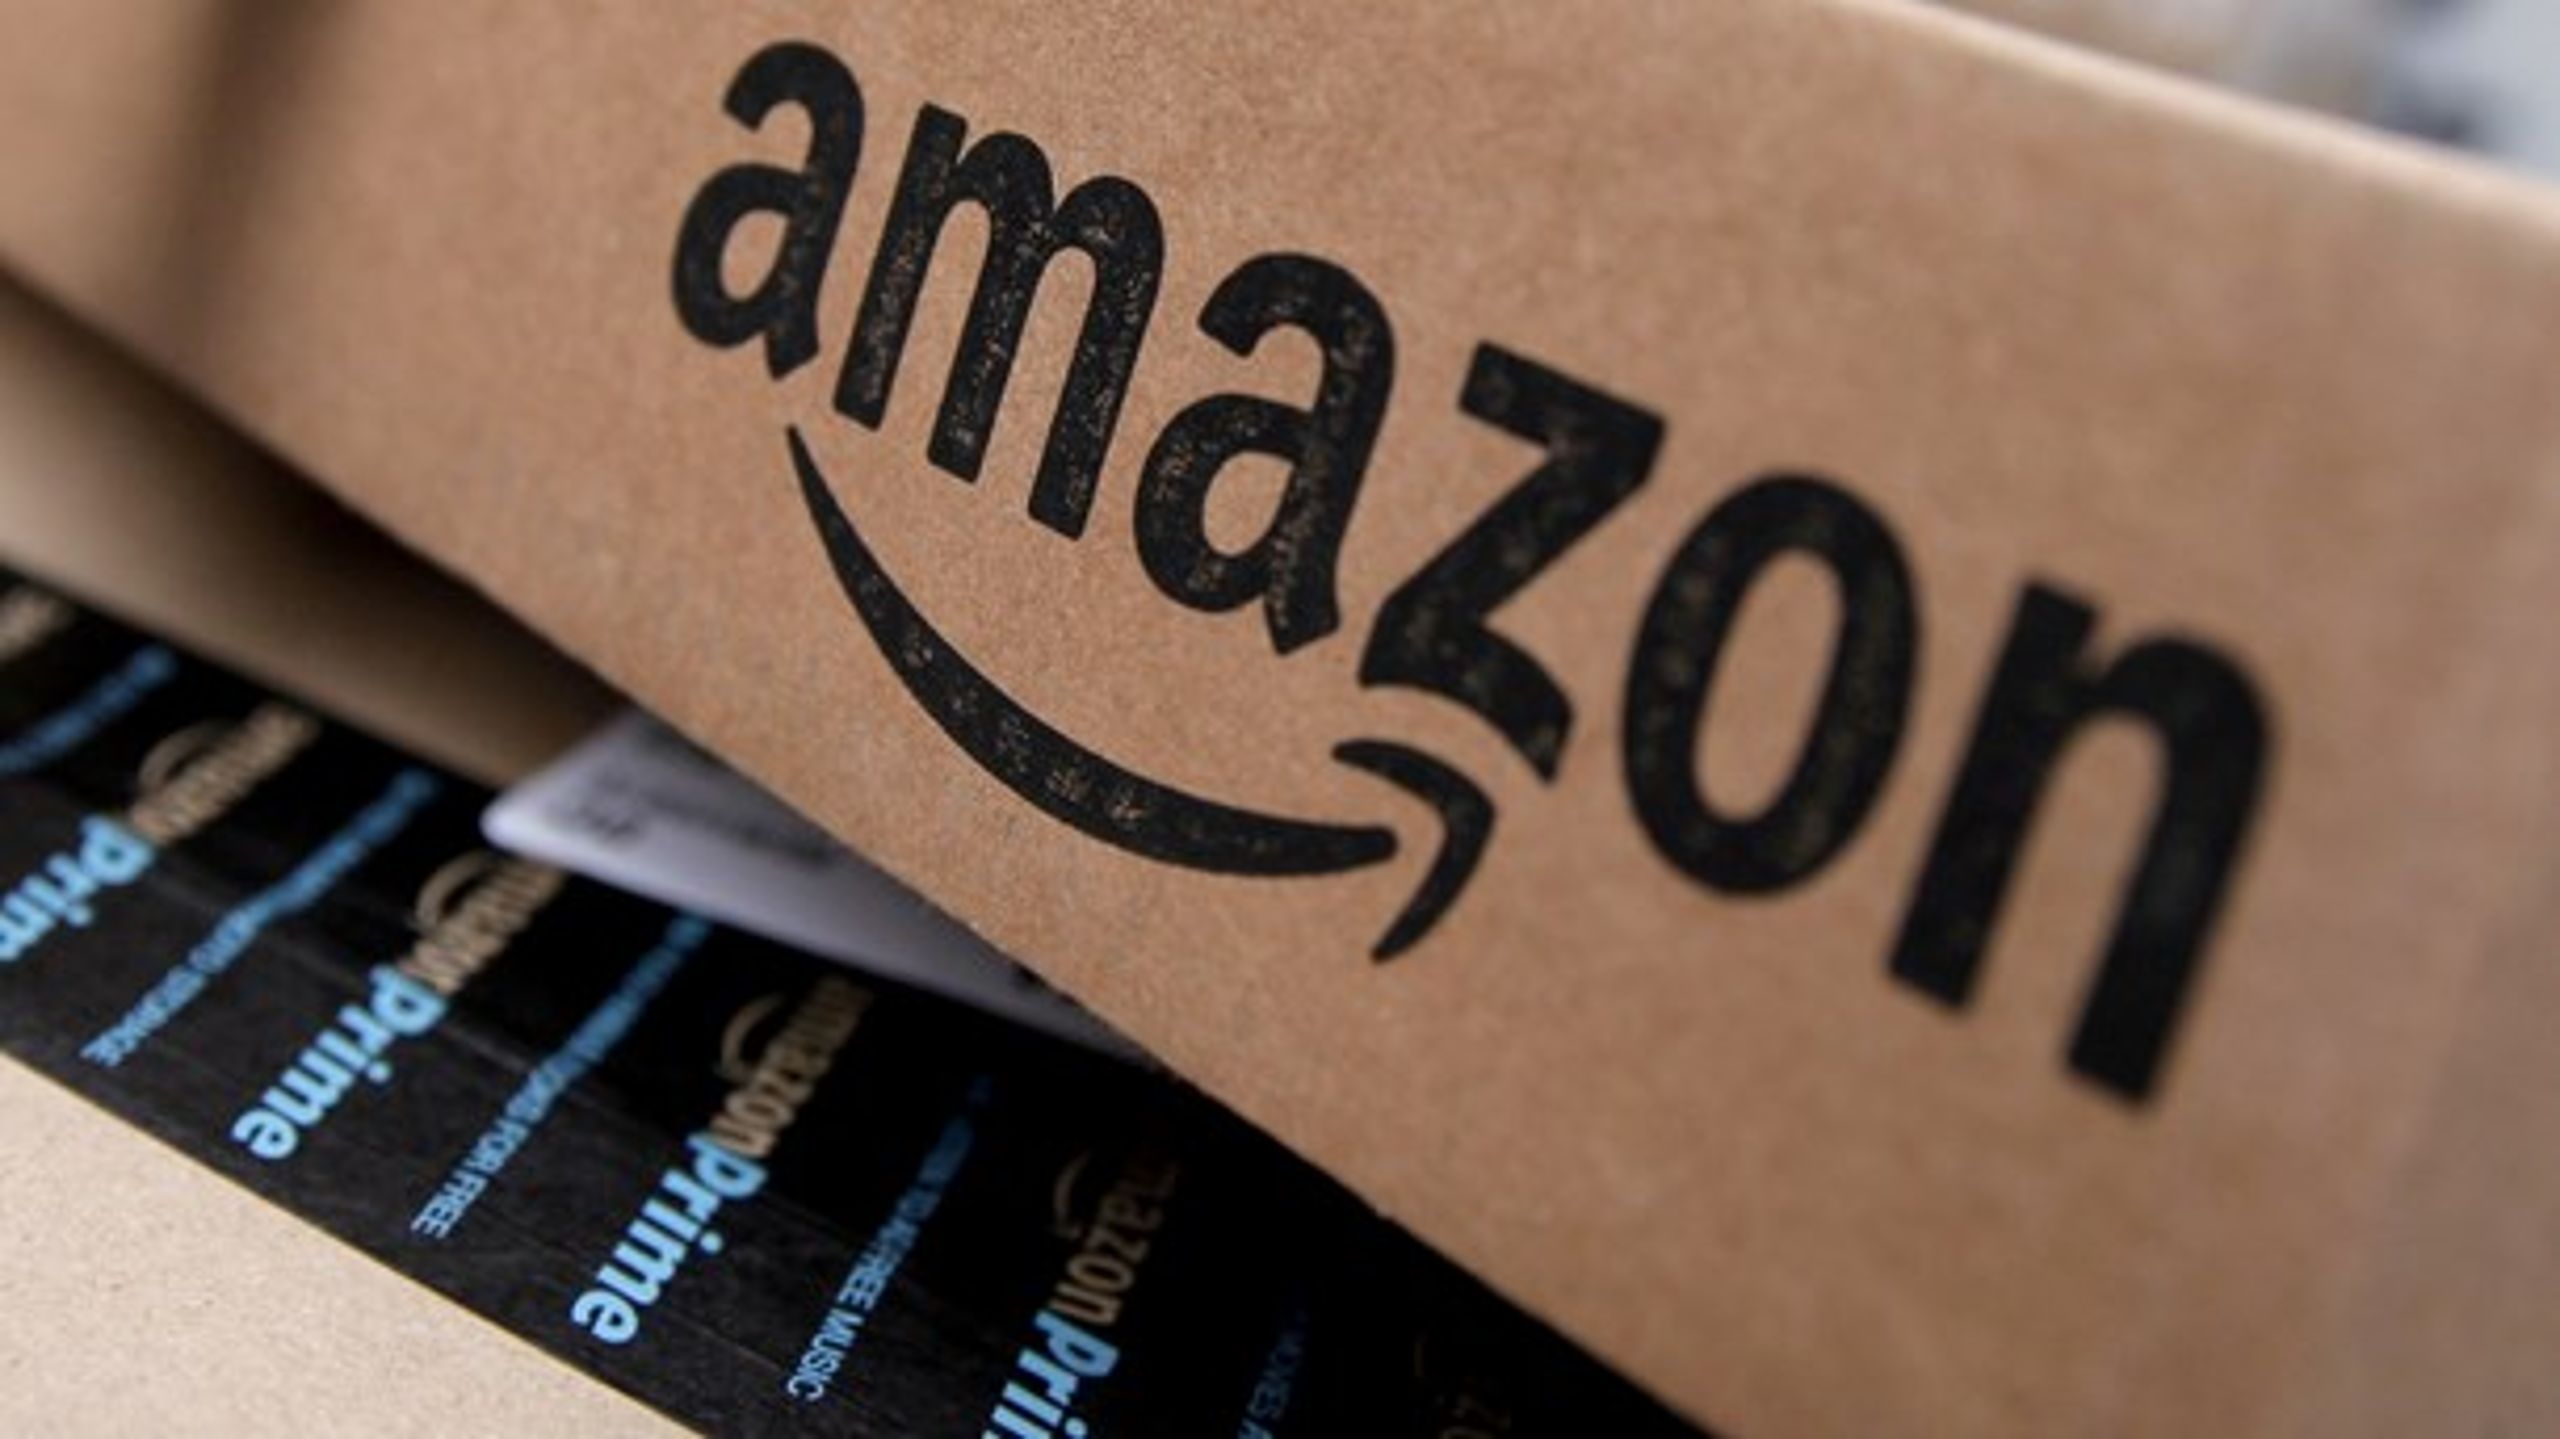 Den danske bogbranche frygter, at Amazon køber rettighederne op til den danske litteraturhistorie og sælger hele molevitten på et brandudsalg, fortæller Niels Frid-Nielsen.